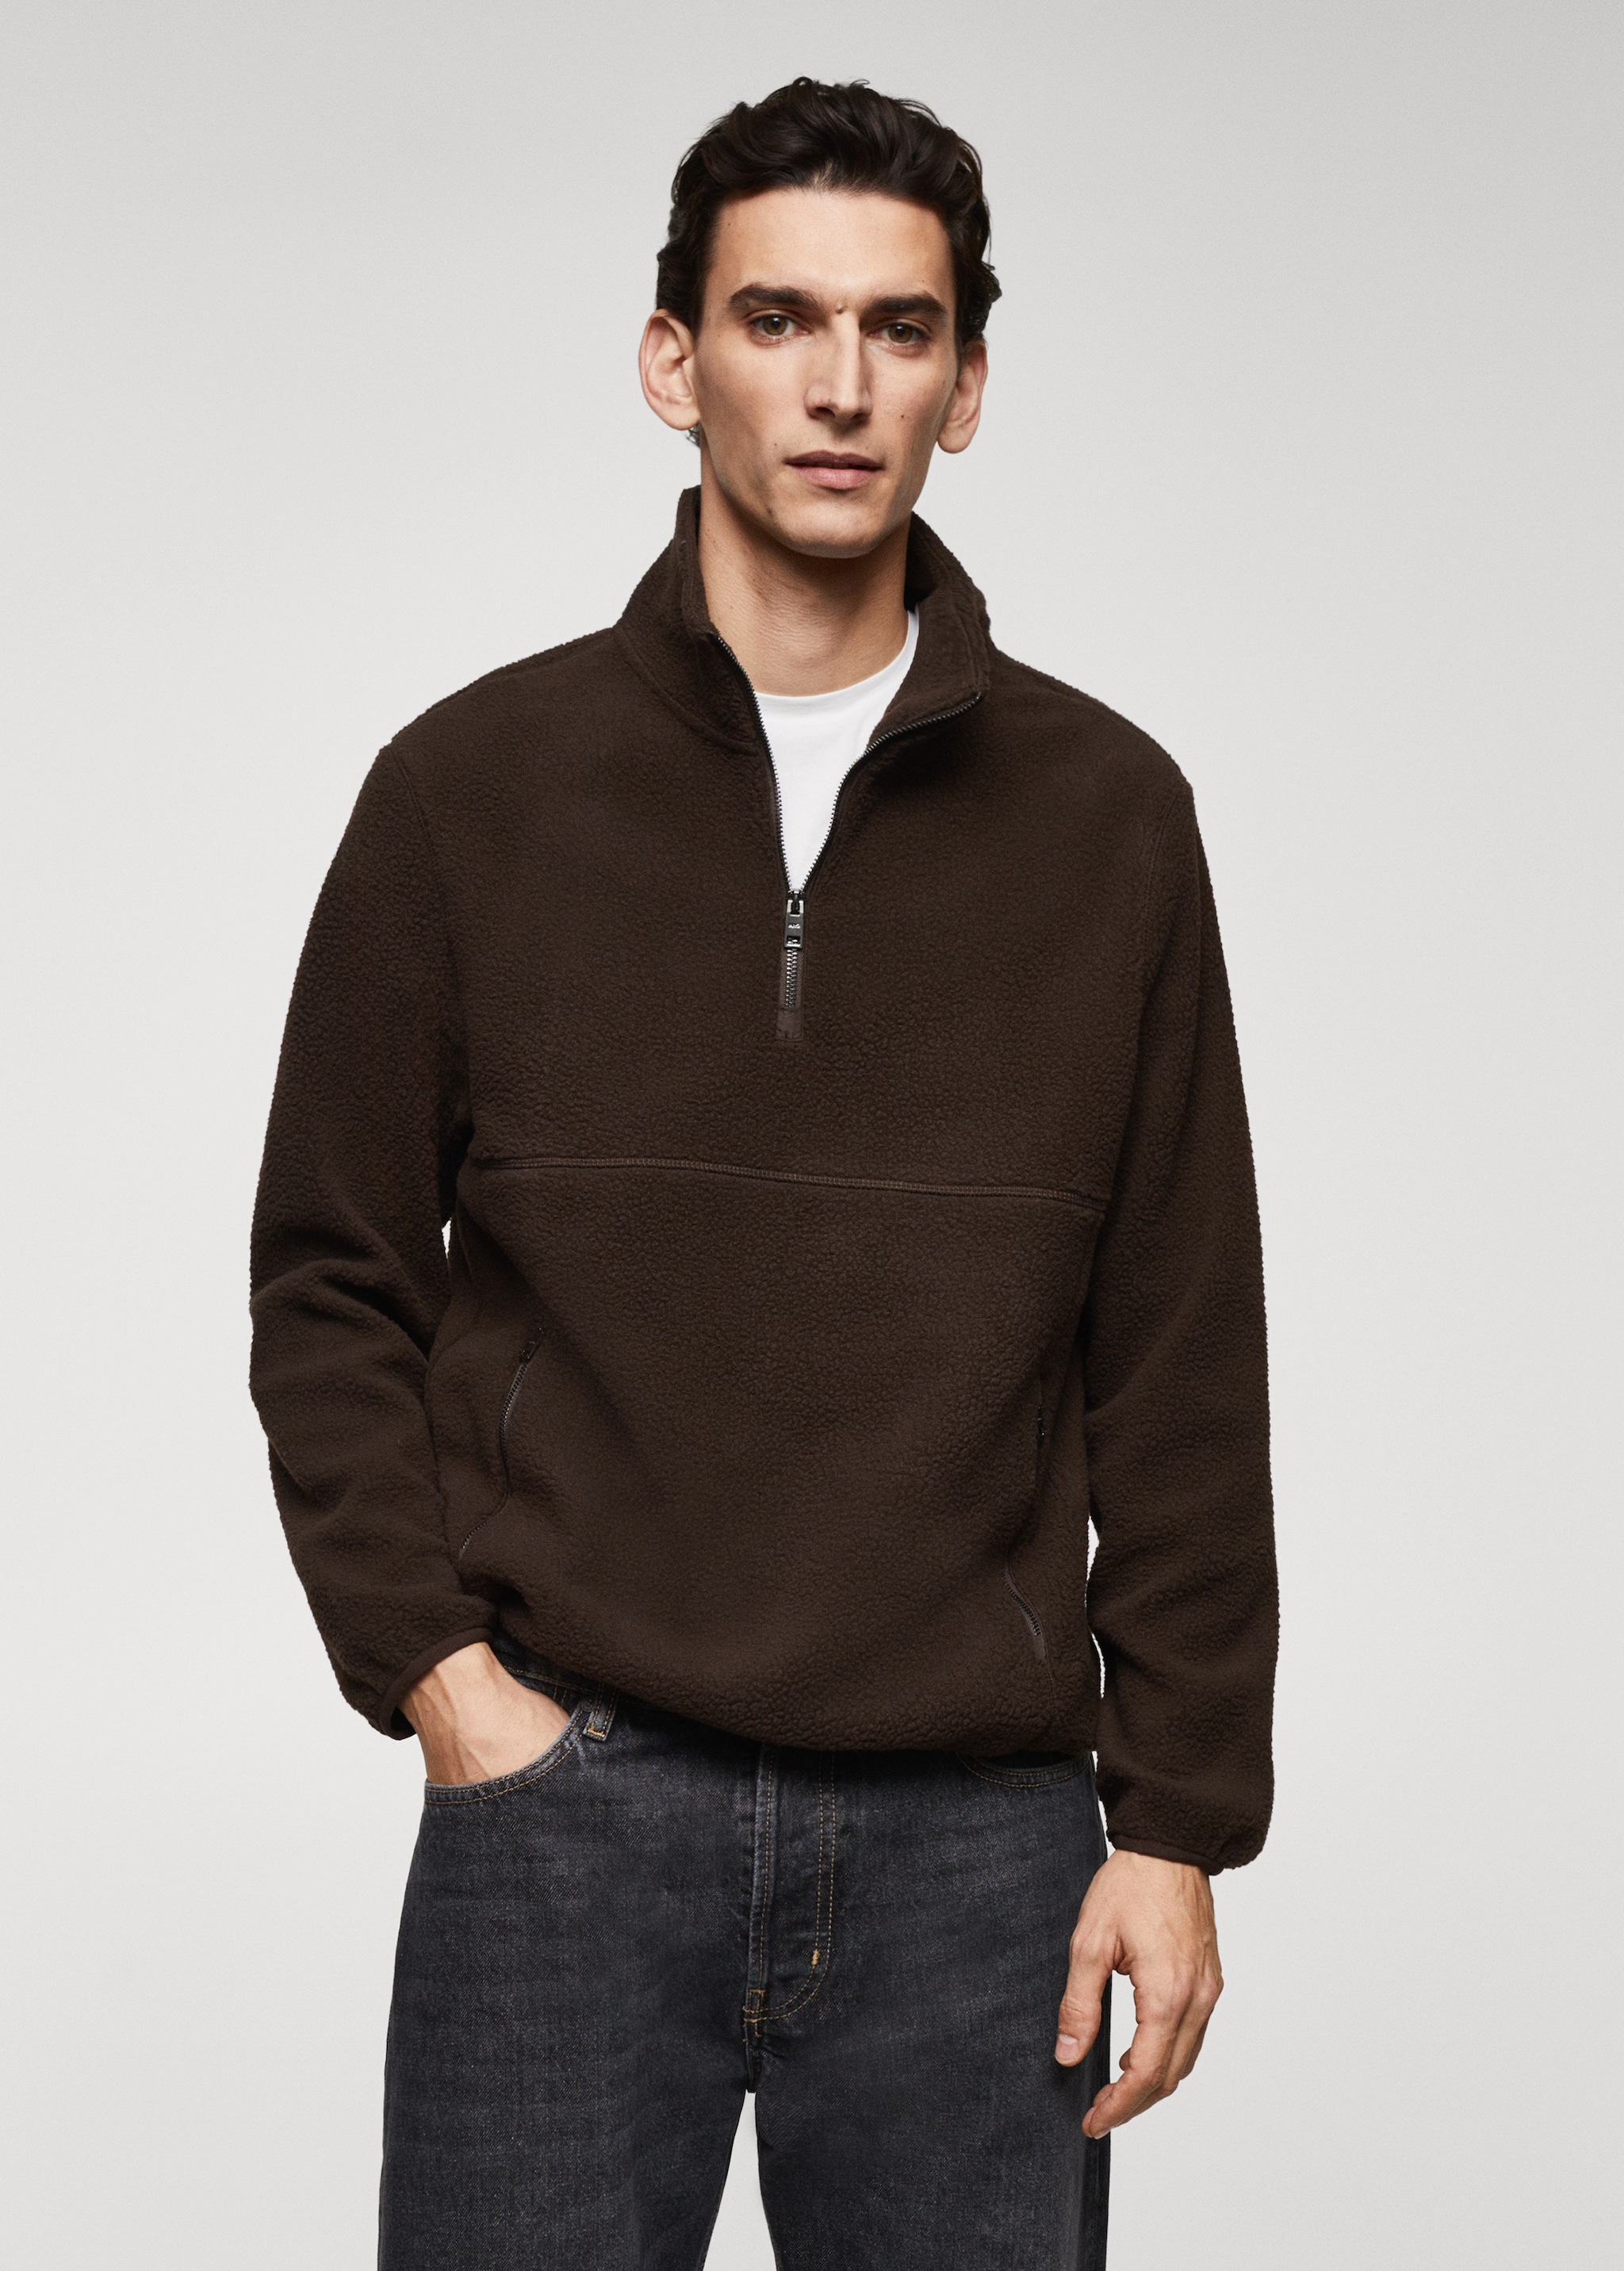 Zip-neck fleece sweatshirt - Medium plane